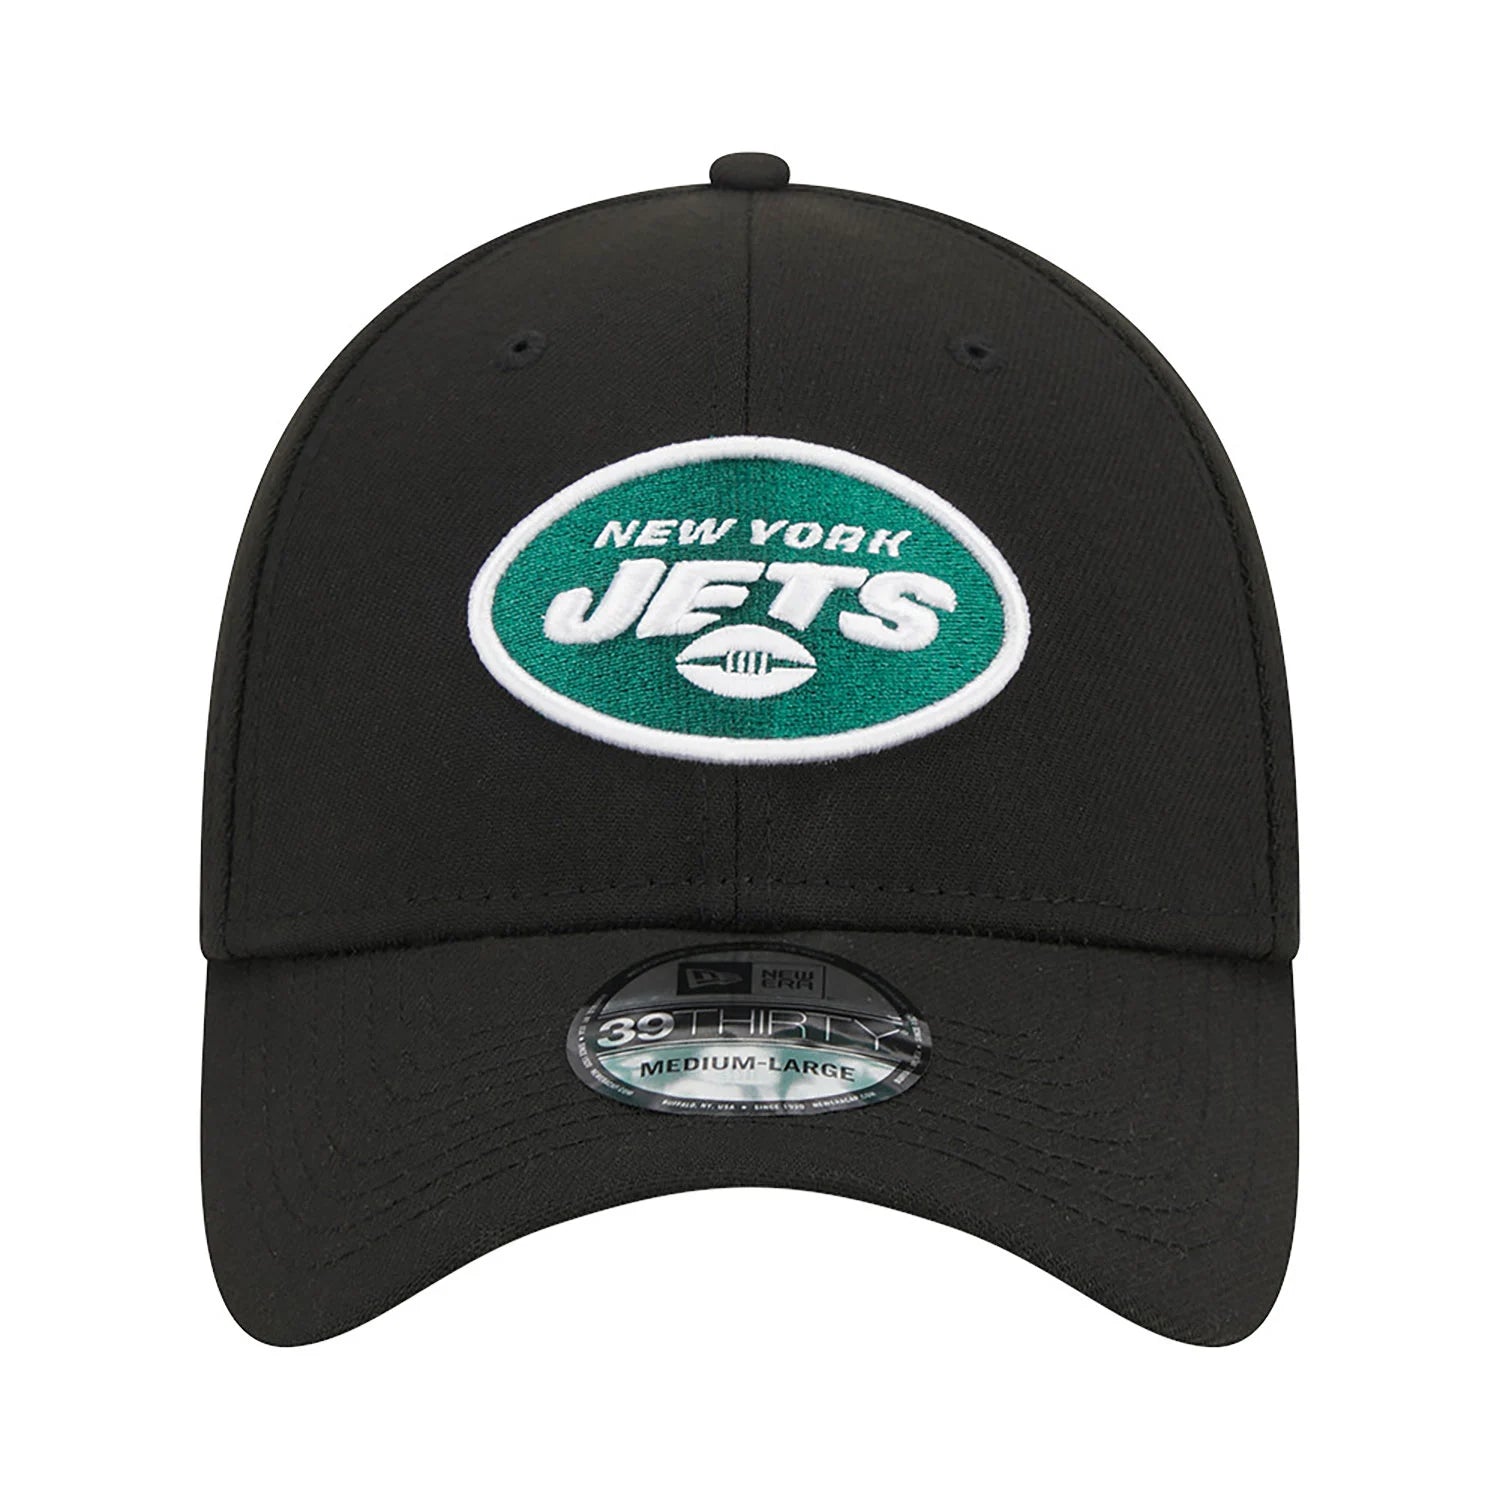 New Era Cap - 39THIRTY Jets NFL Team